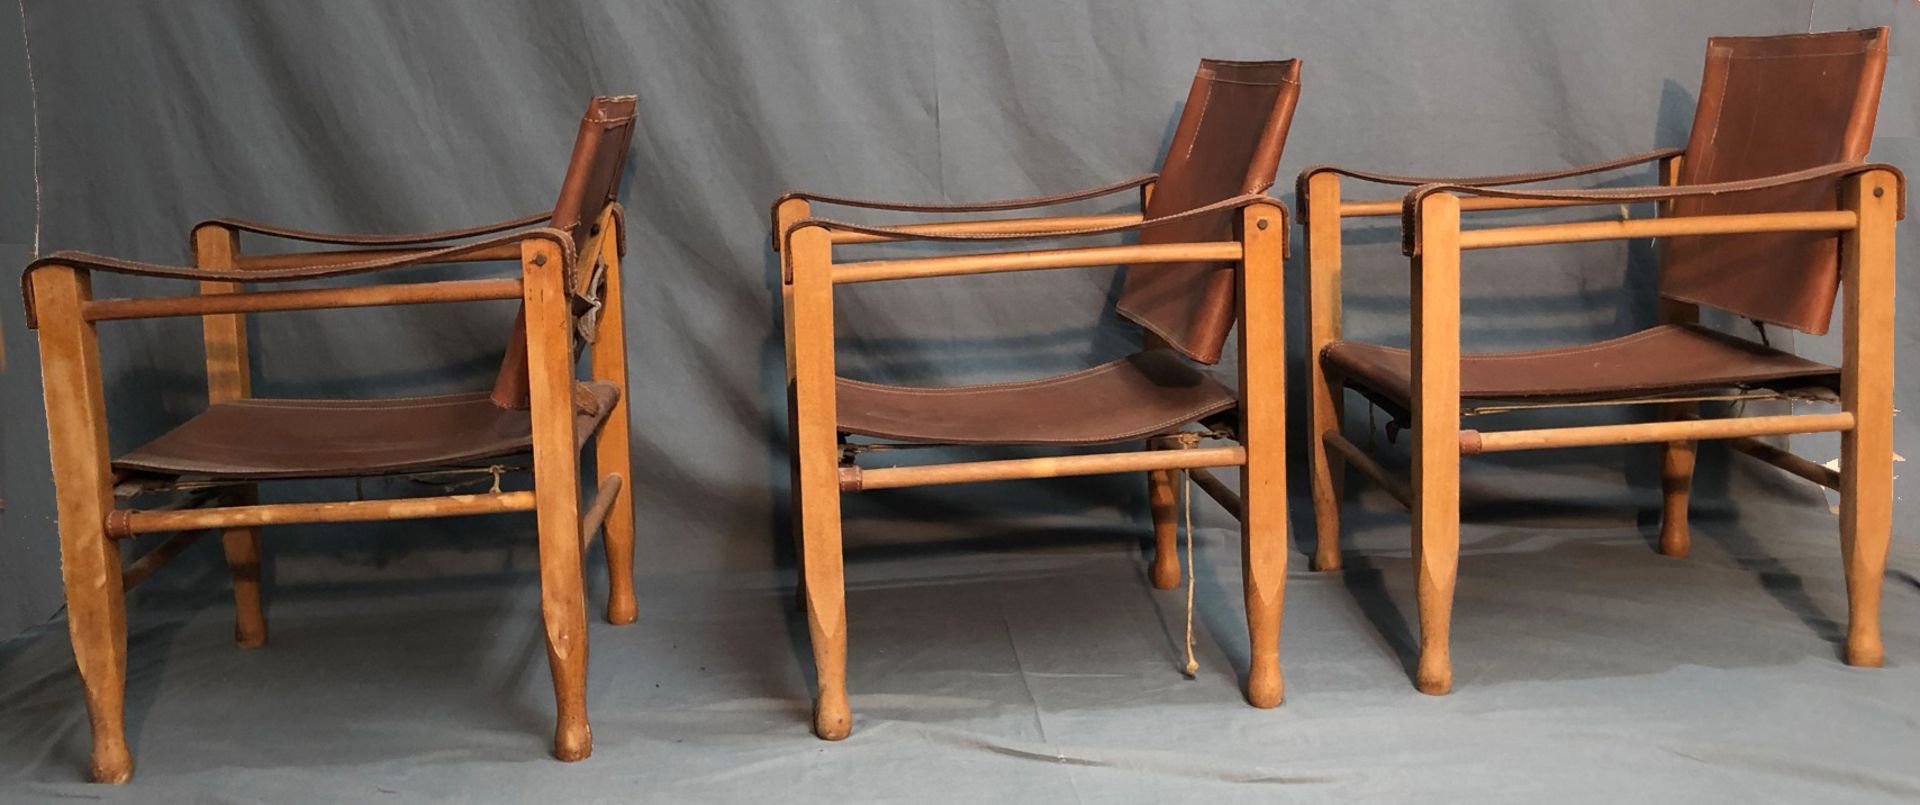 3 Safari Chair. Leder und Holz. Wohl Design von Wilhelm KIENZLE (1886-1958). - Image 6 of 13